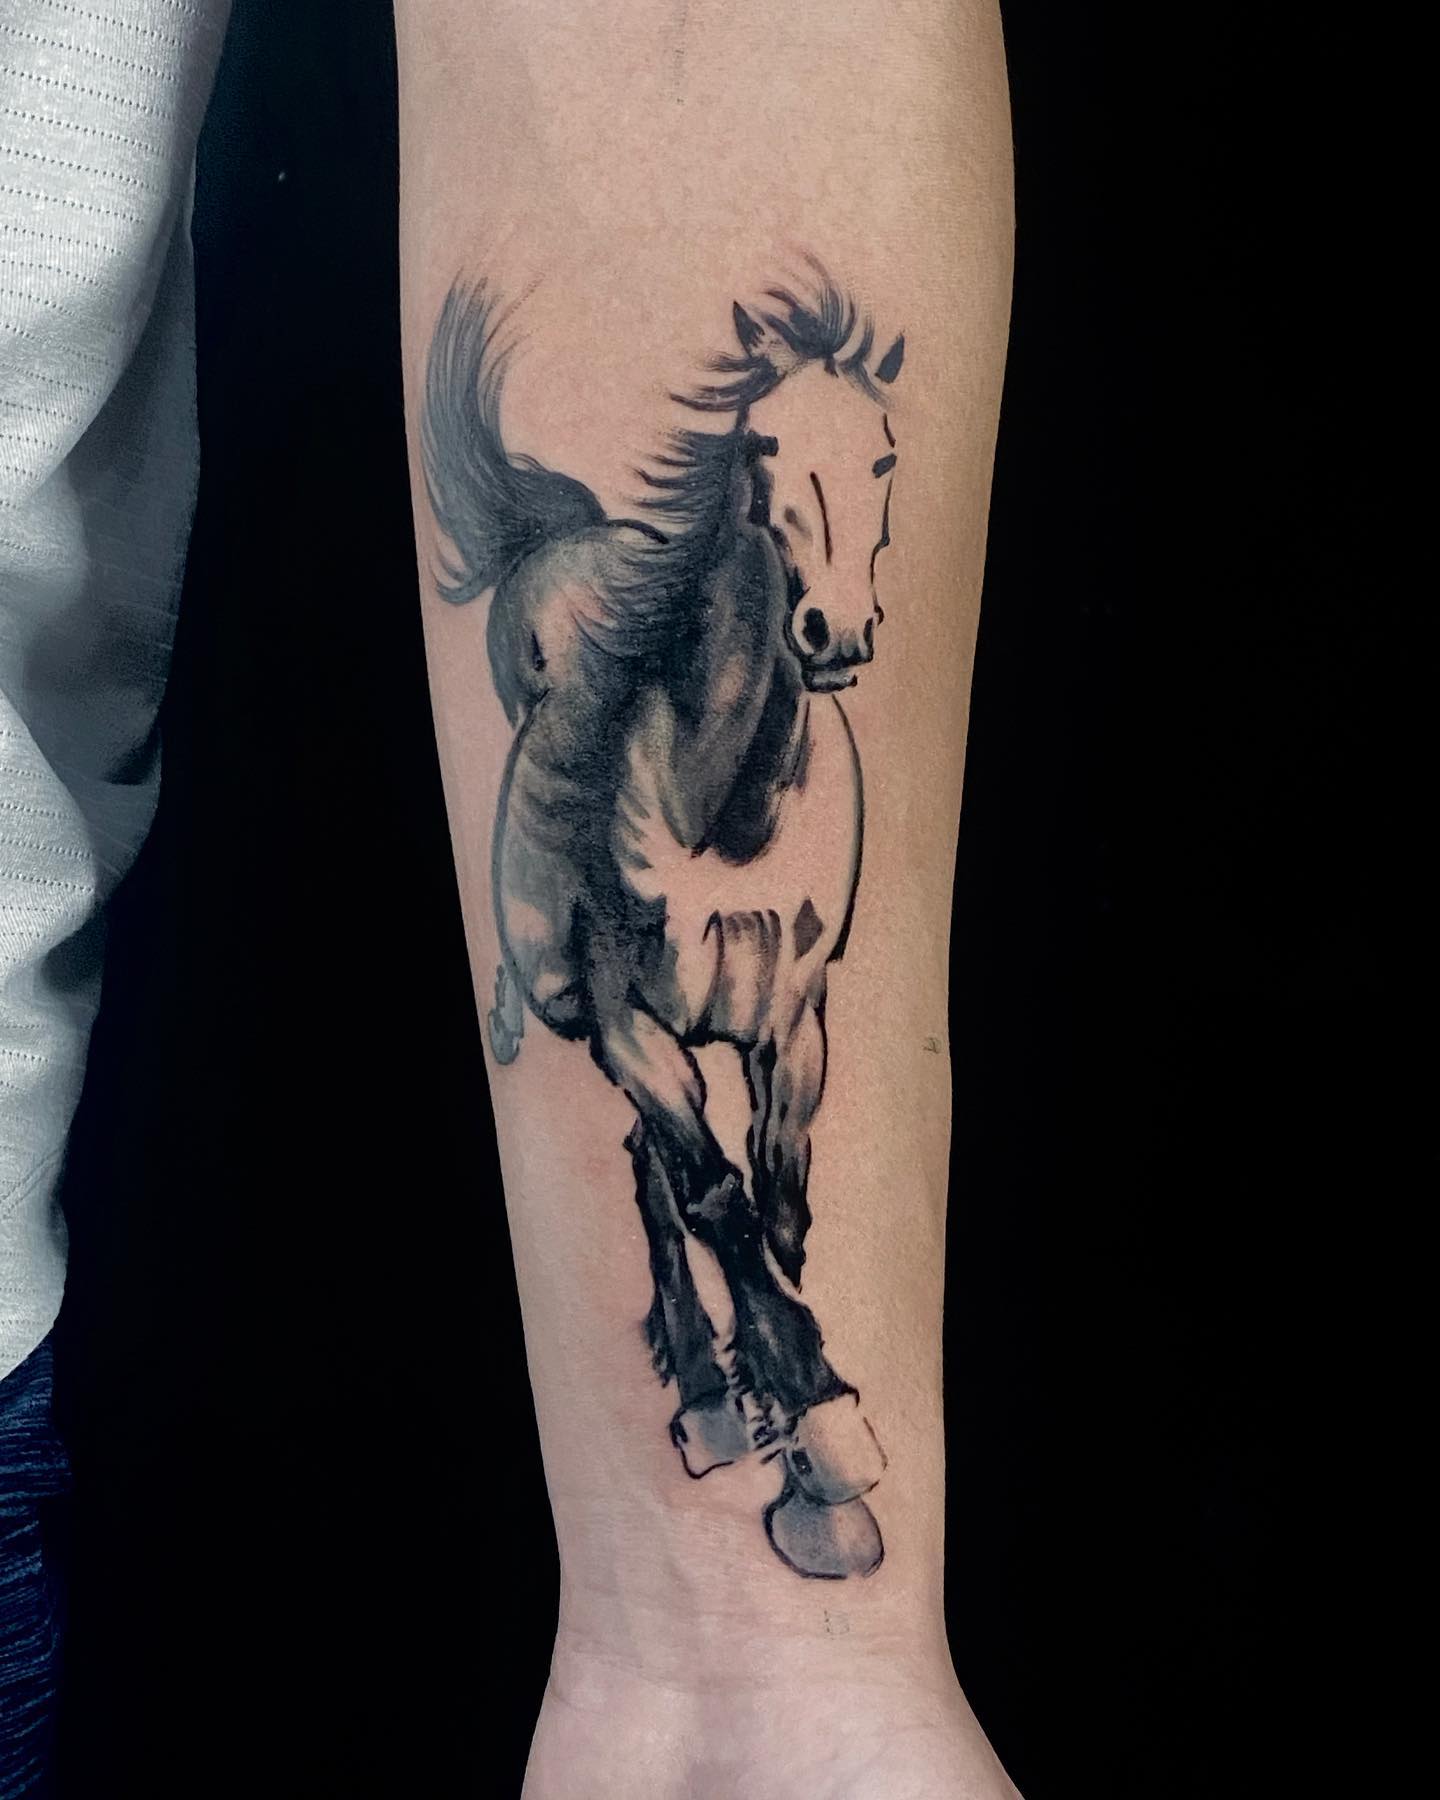 My racehorse tattoo | Name tattoos, Tattoos, Horse tattoo